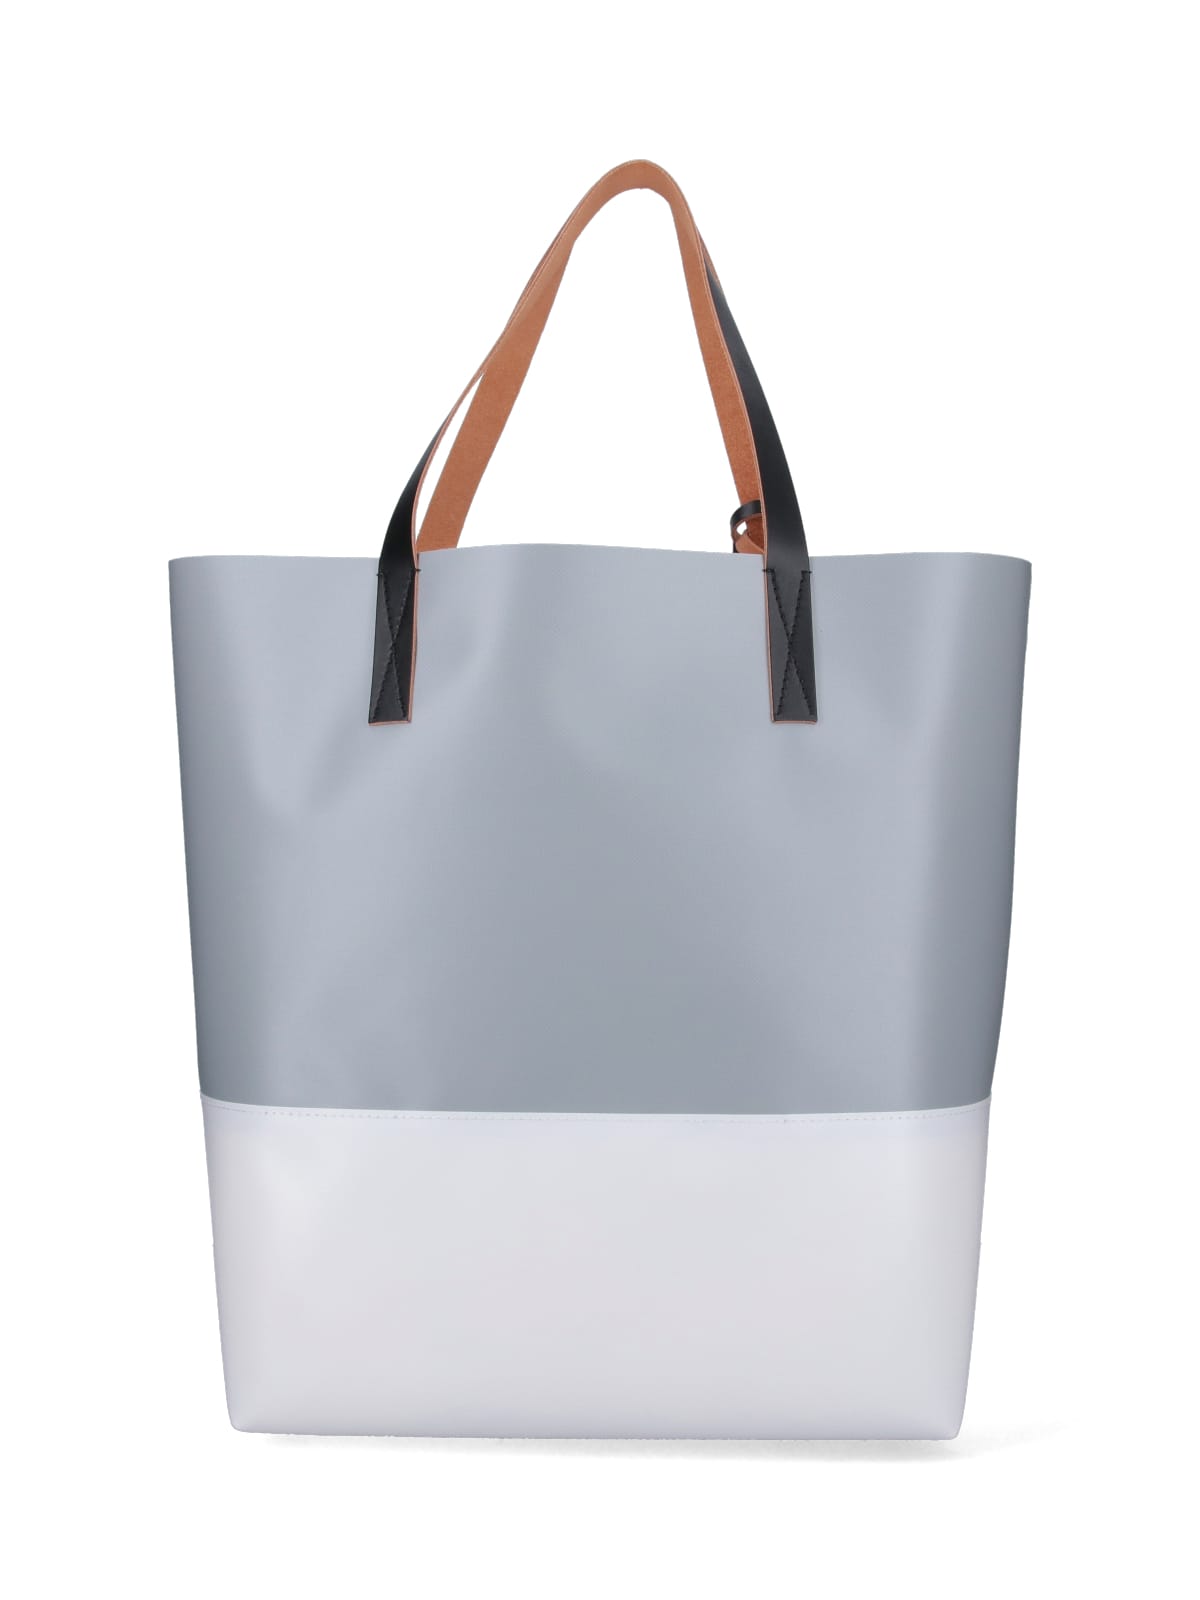 Shop Marni Tribeca Tote Bag In Grigio/argento